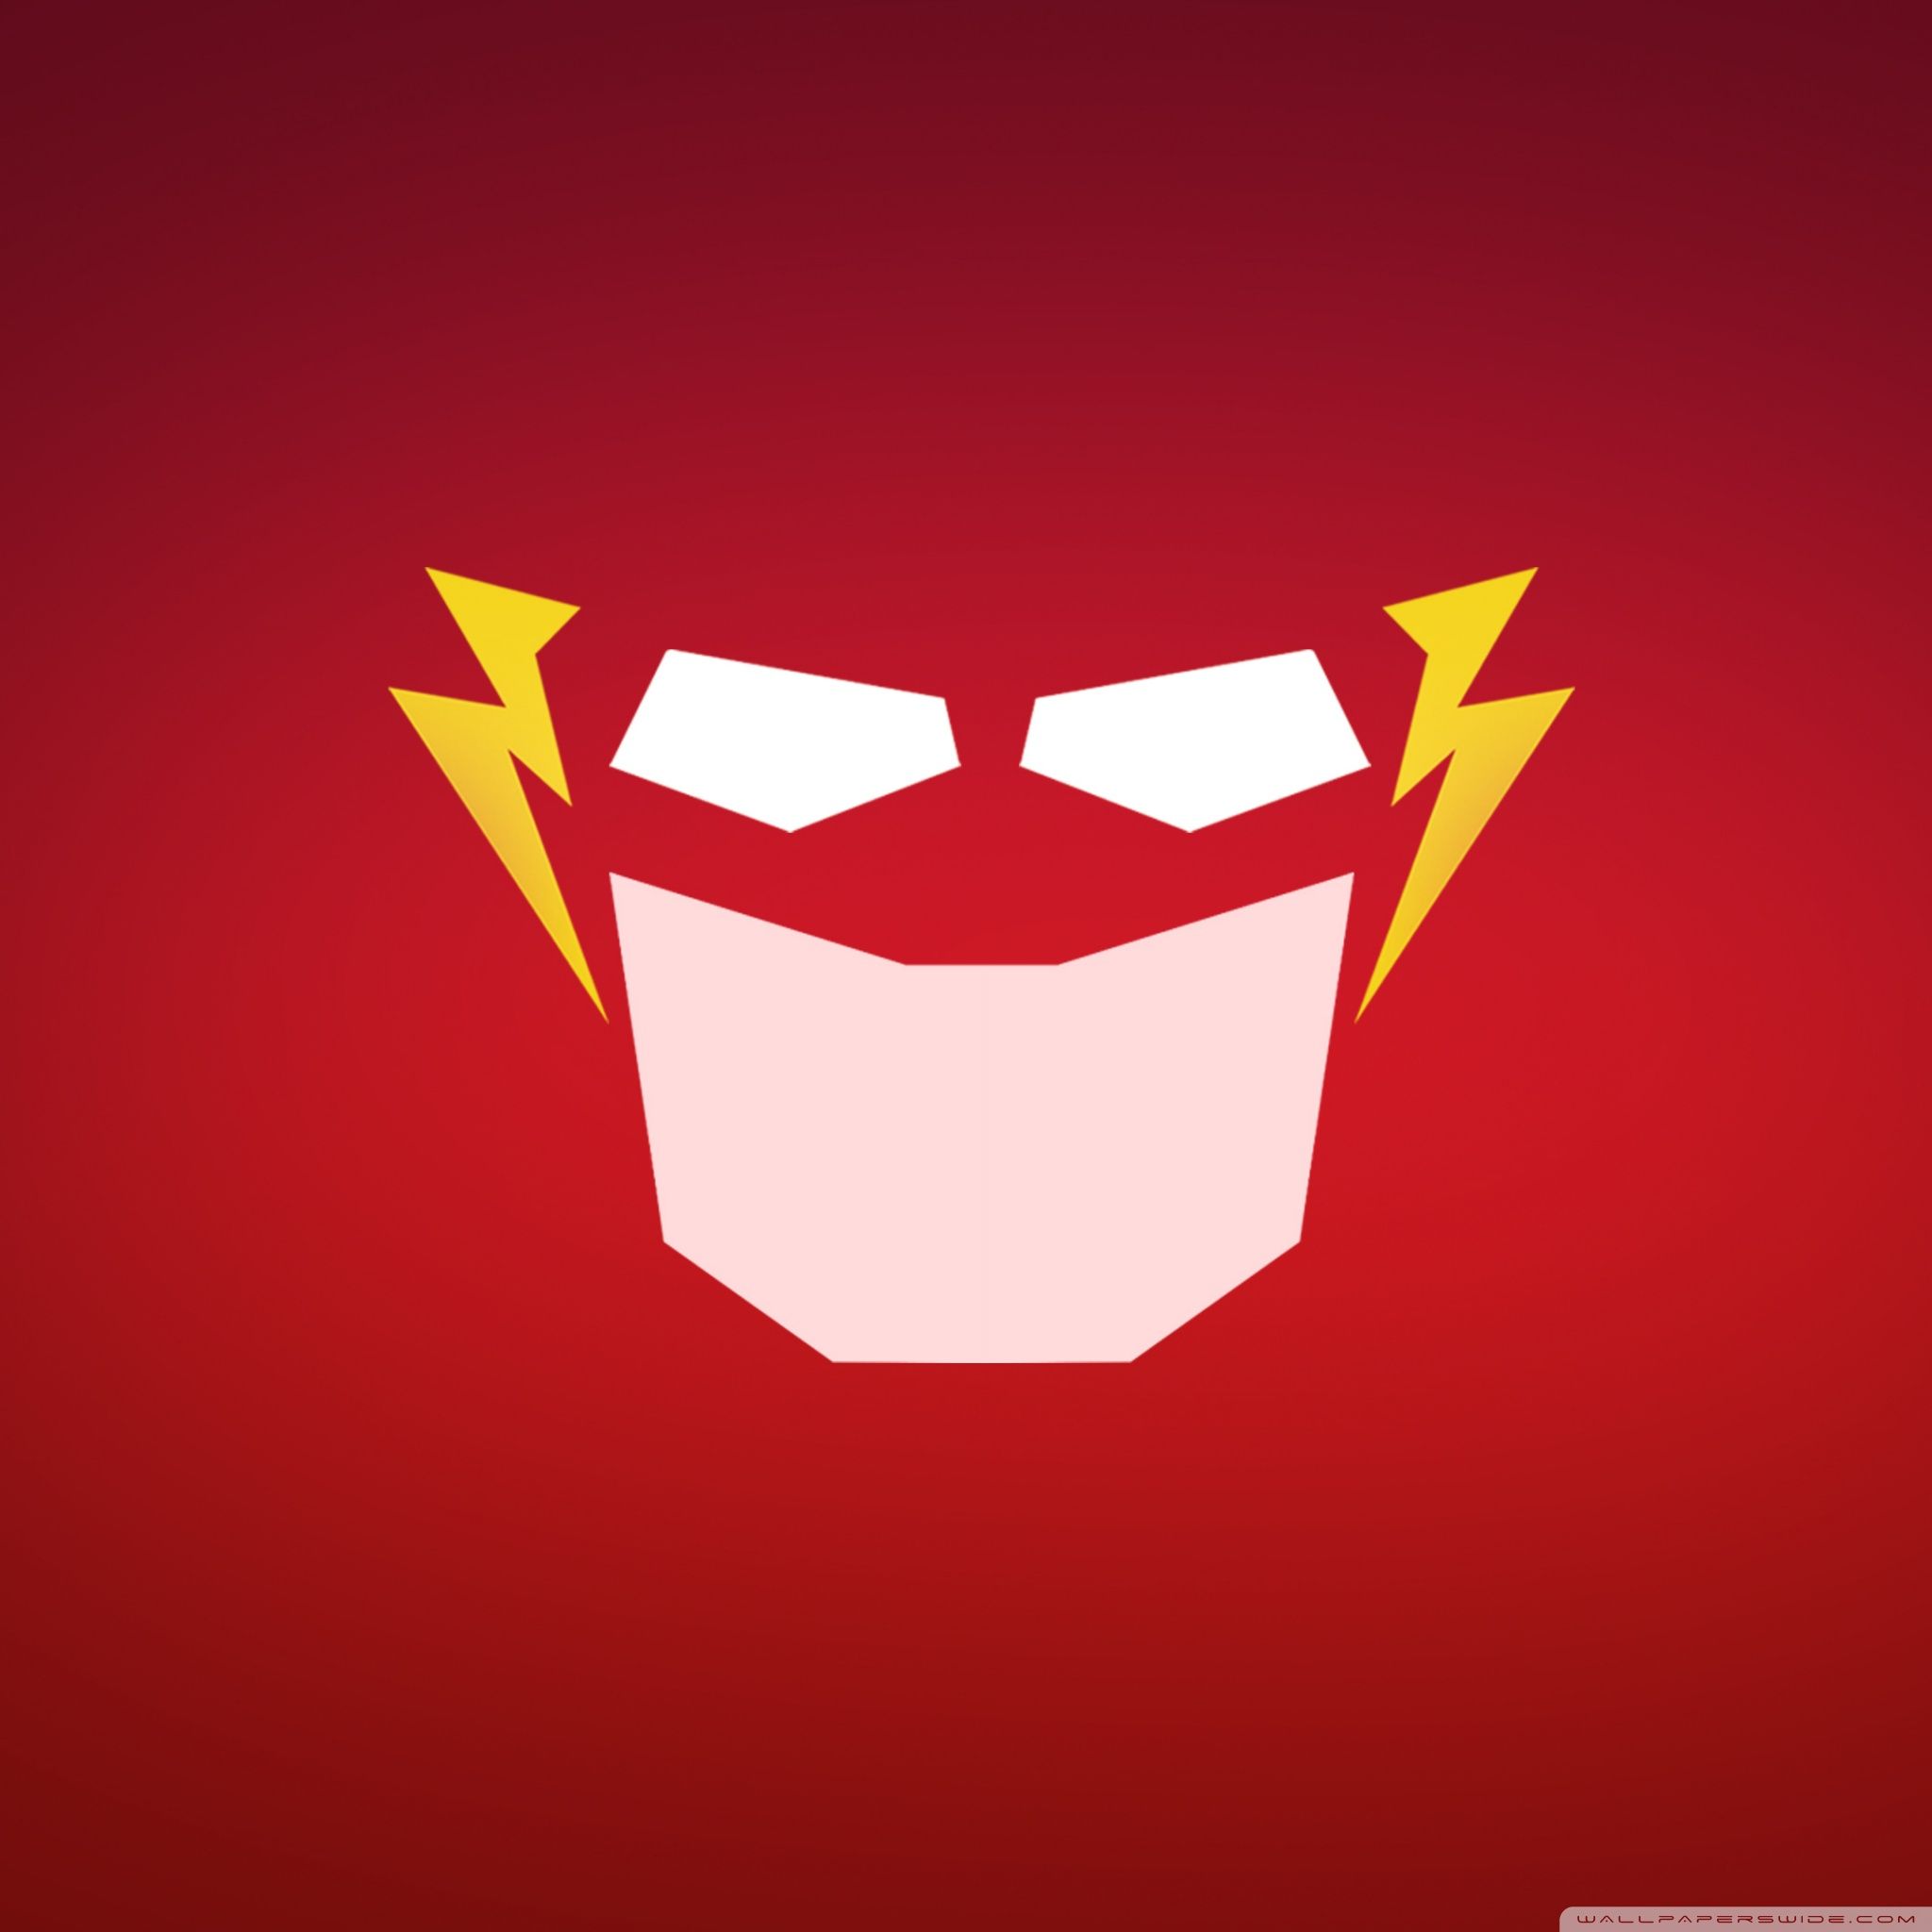 Wallpaper Weekends: The Flash Returns! | MacTrast